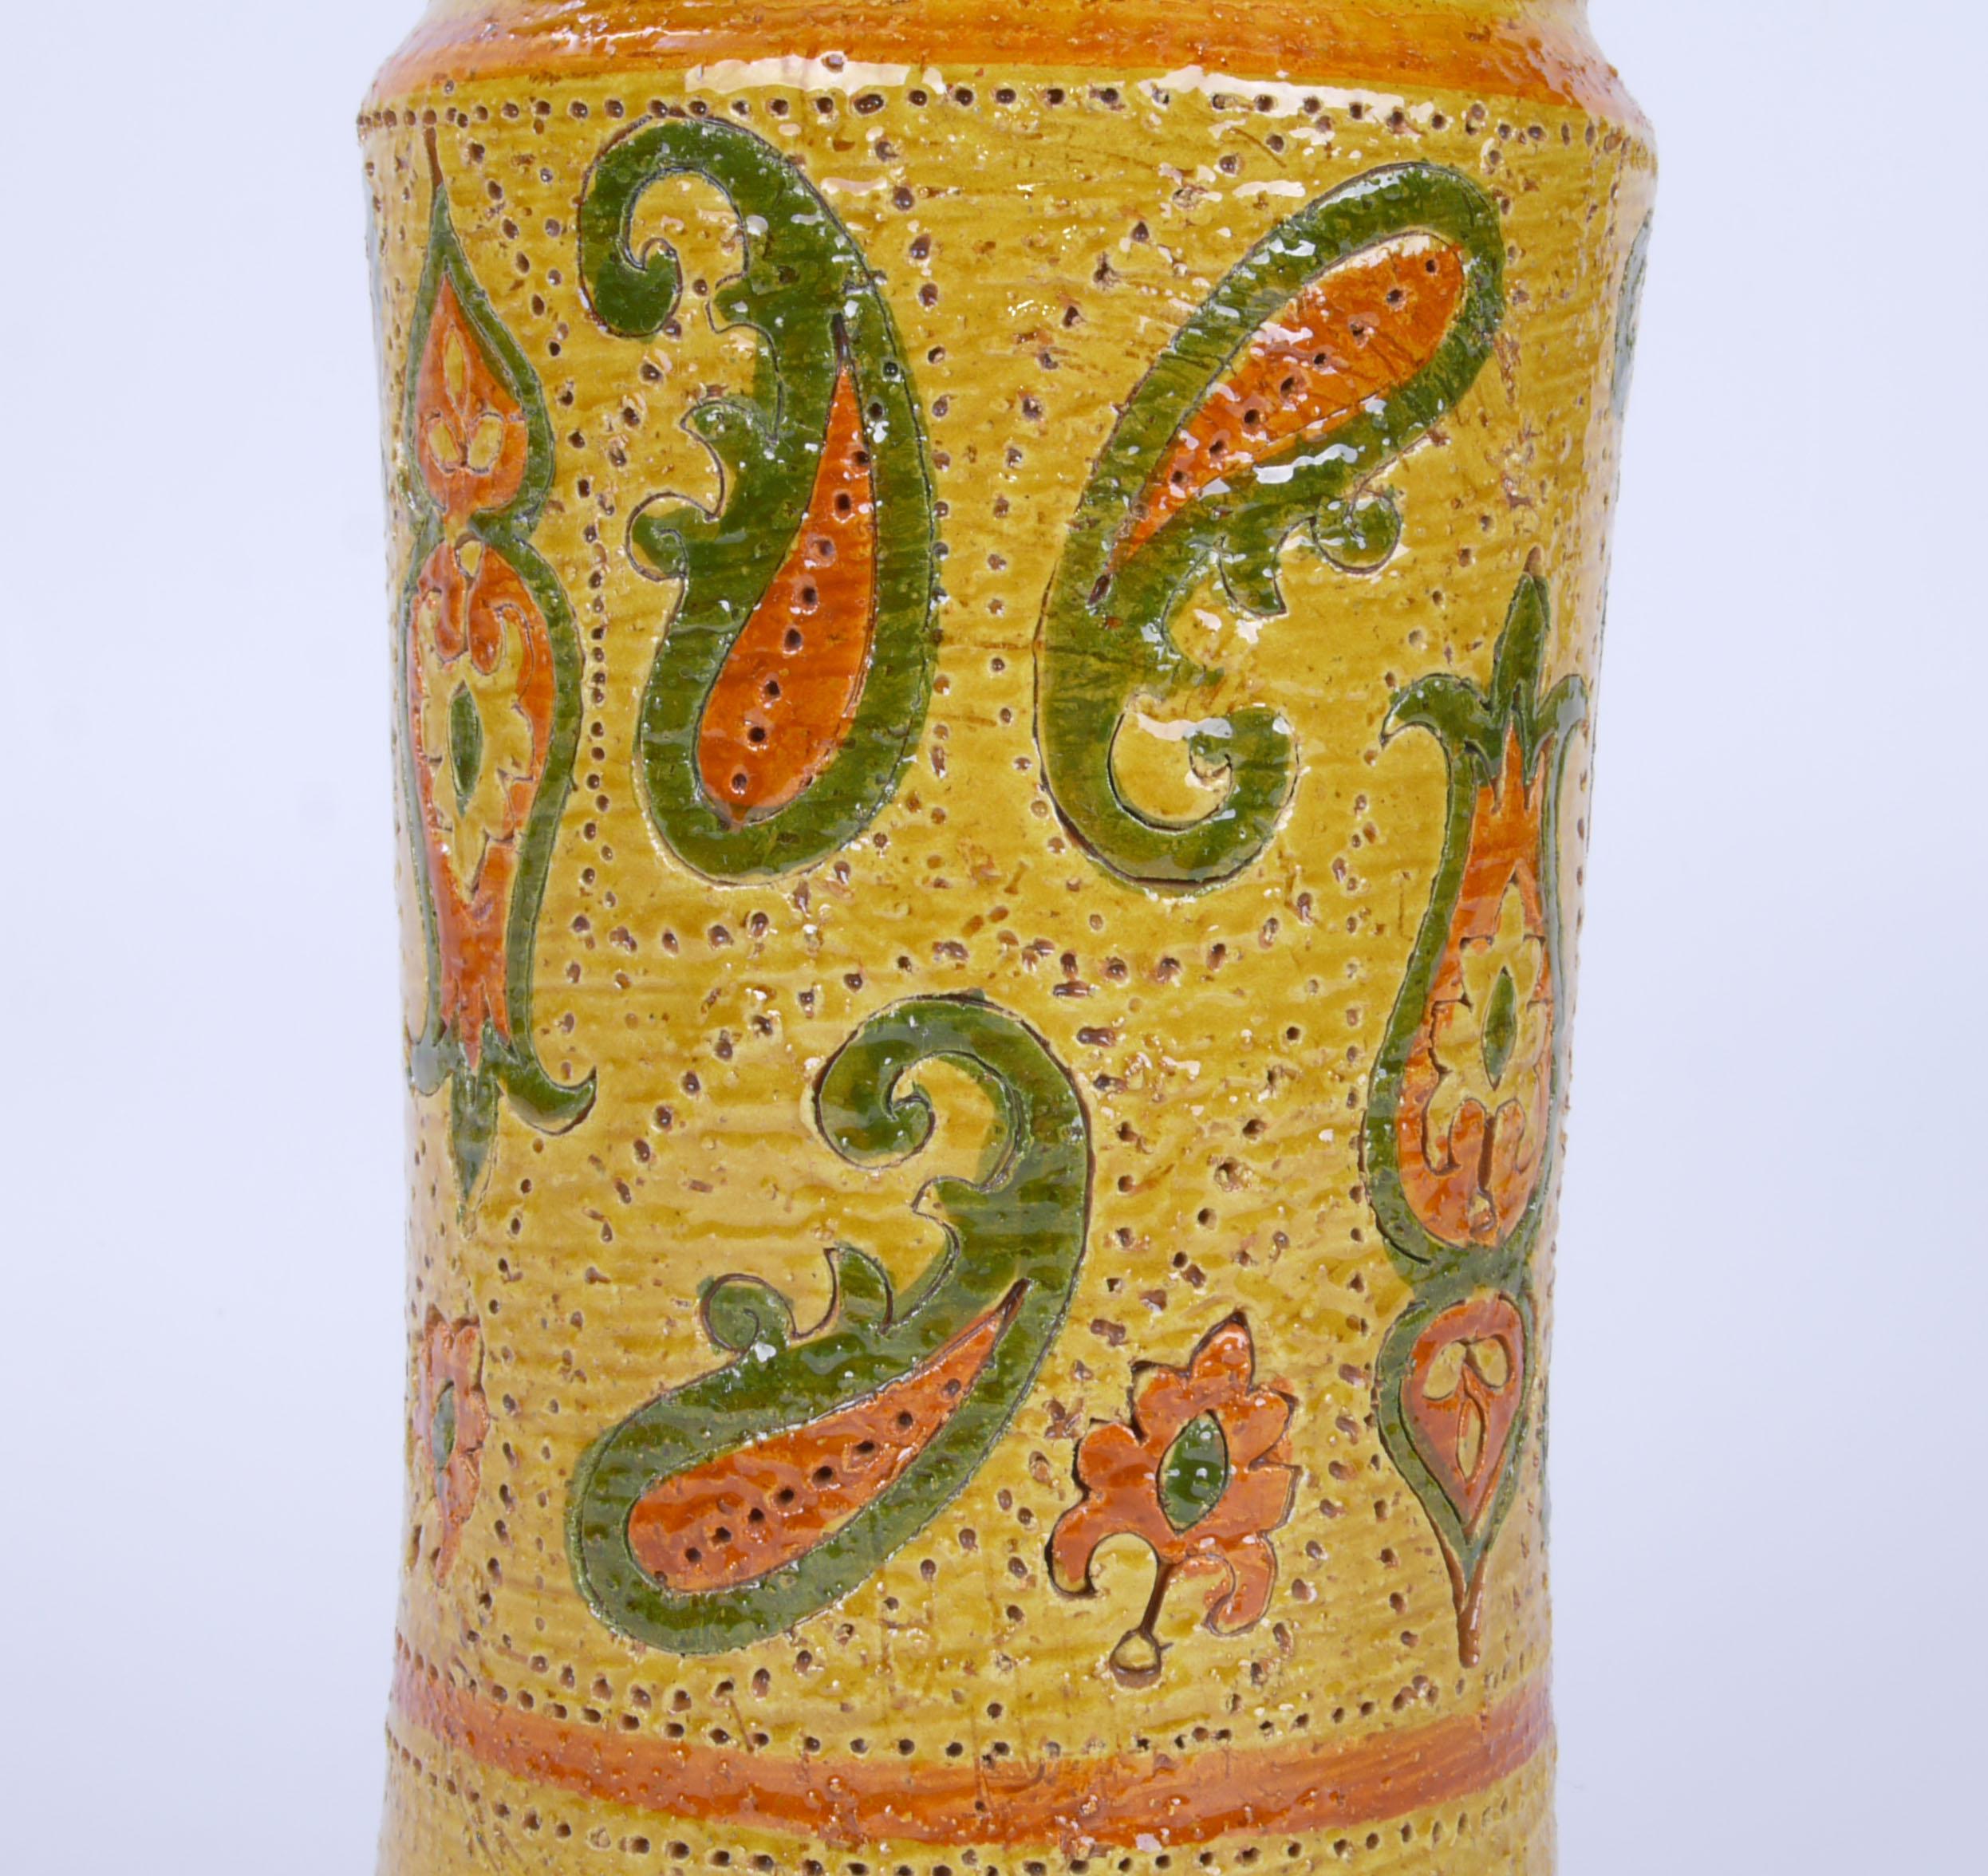 Rosenthal-Netter Mid-Century Modern glasierte Keramikvase aus Italien.
Vintage-Vase aus glasierter Keramik in Senfgelb mit Paisleymotiven, von Rosenthal-Netter. Auf der Unterseite markiert und nummeriert.